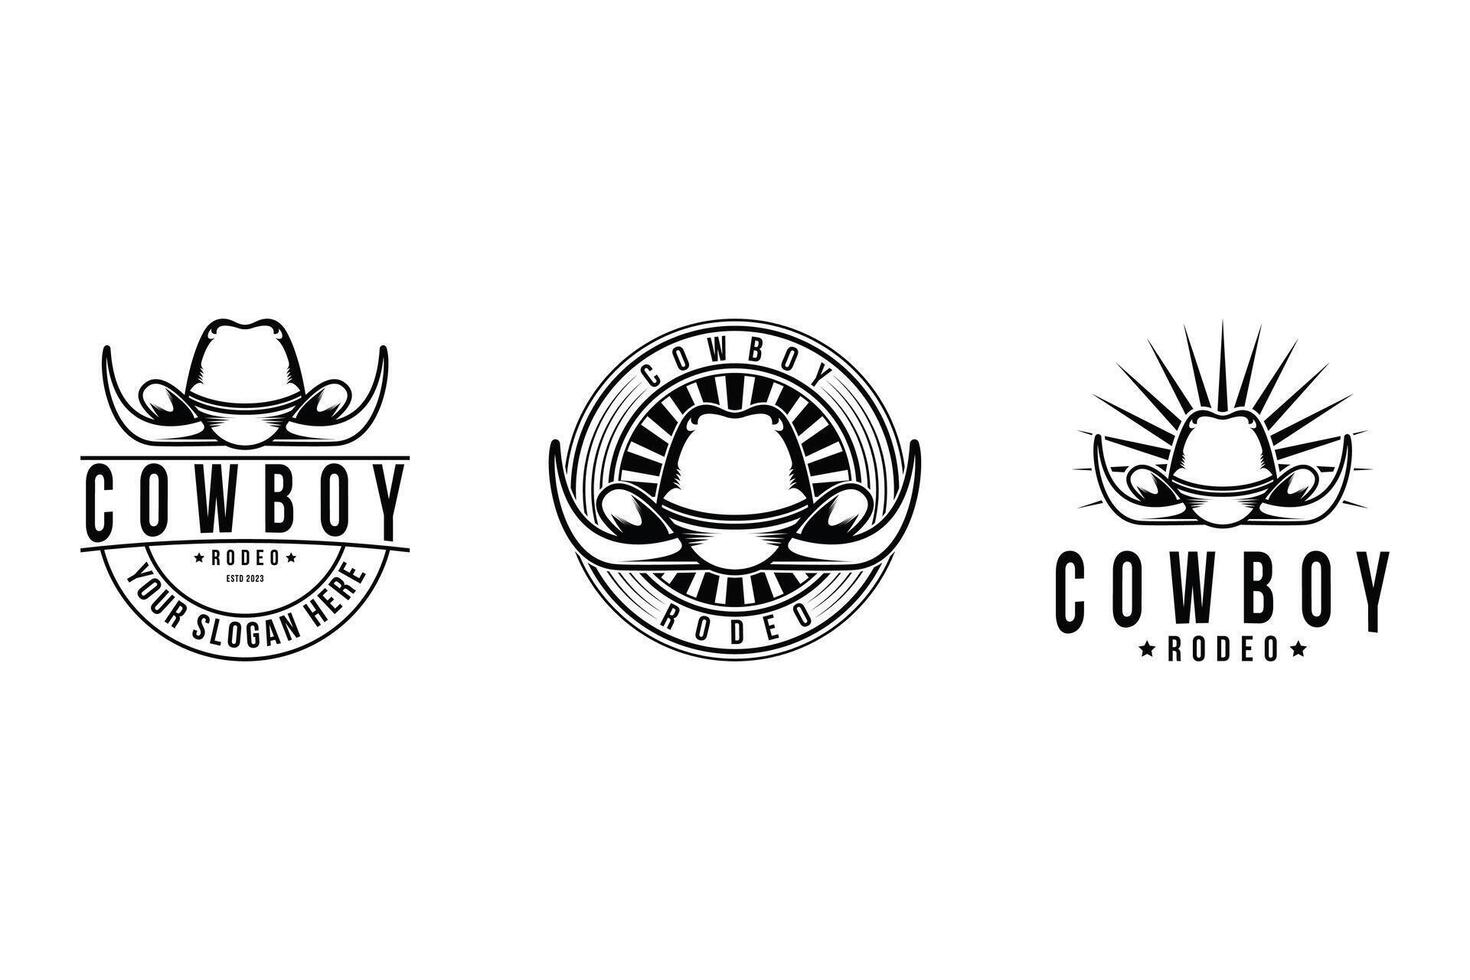 ensemble de owboy chapeau rodeo logo conception ancien rétro étiquette vecteur